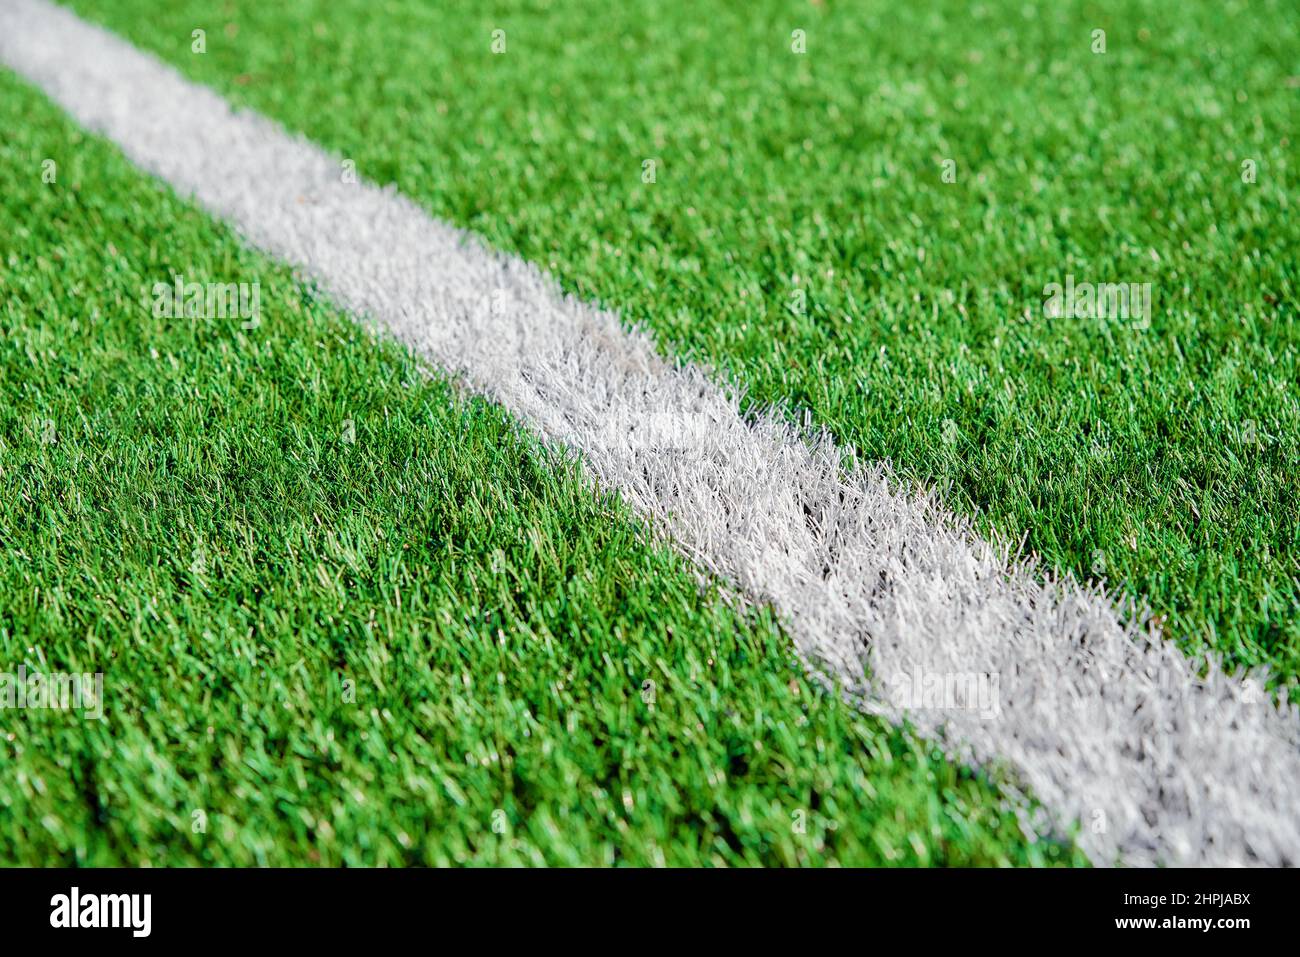 Une partie de football ou terrain de football gros plan, pelouse verte Artifical avec des lignes de bordure blanches, Astroturf au stade pour les parties de spart Banque D'Images